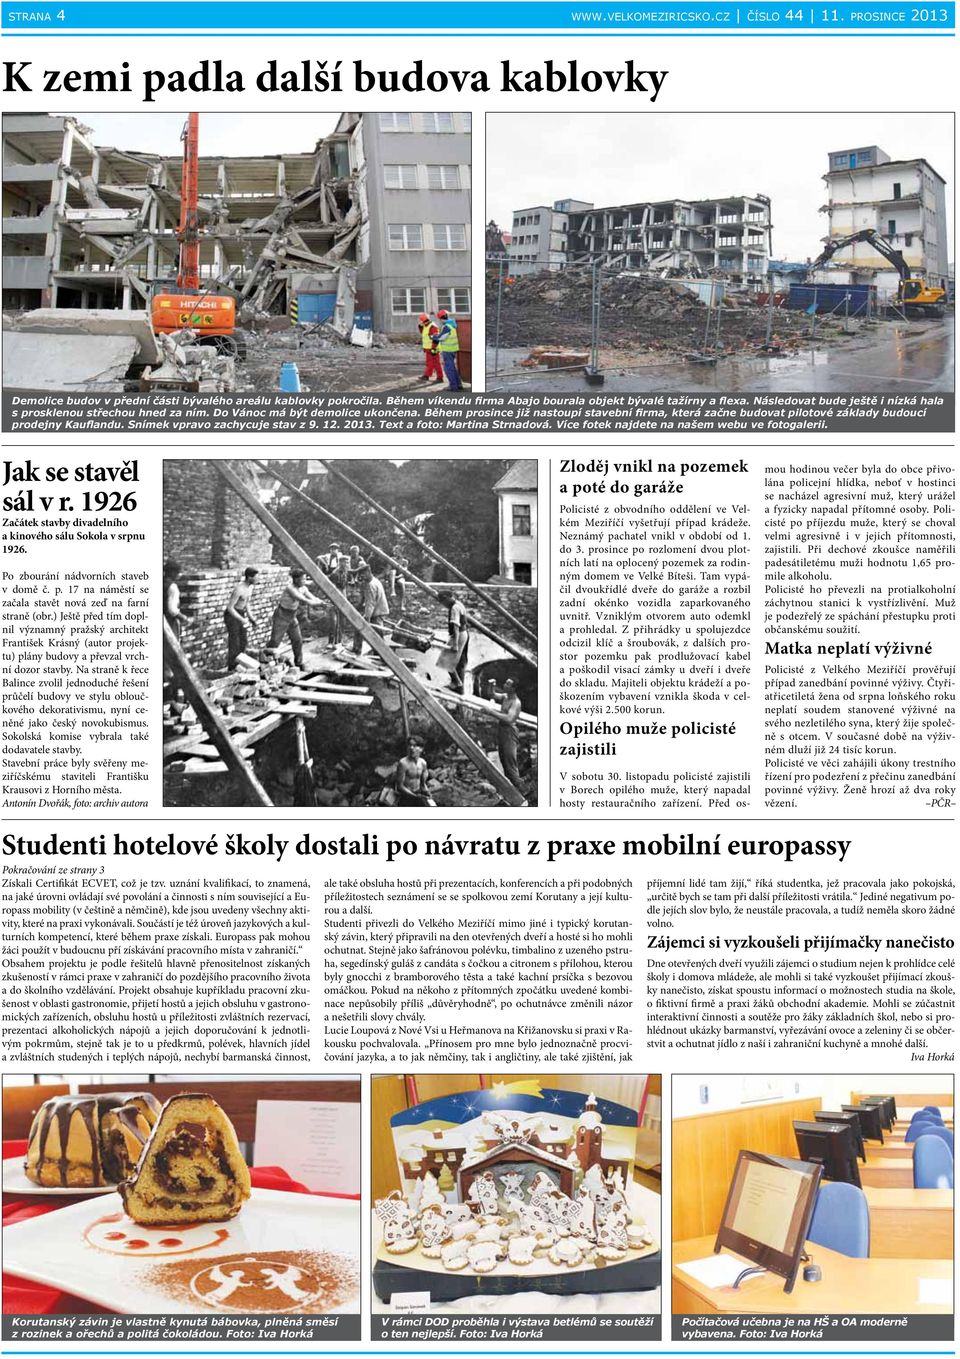 Během prosince již nastoupí stavební firma, která začne budovat pilotové základy budoucí prodejny Kauflandu. Snímek vpravo zachycuje stav z 9. 12. 2013. Text a foto: Martina Strnadová.